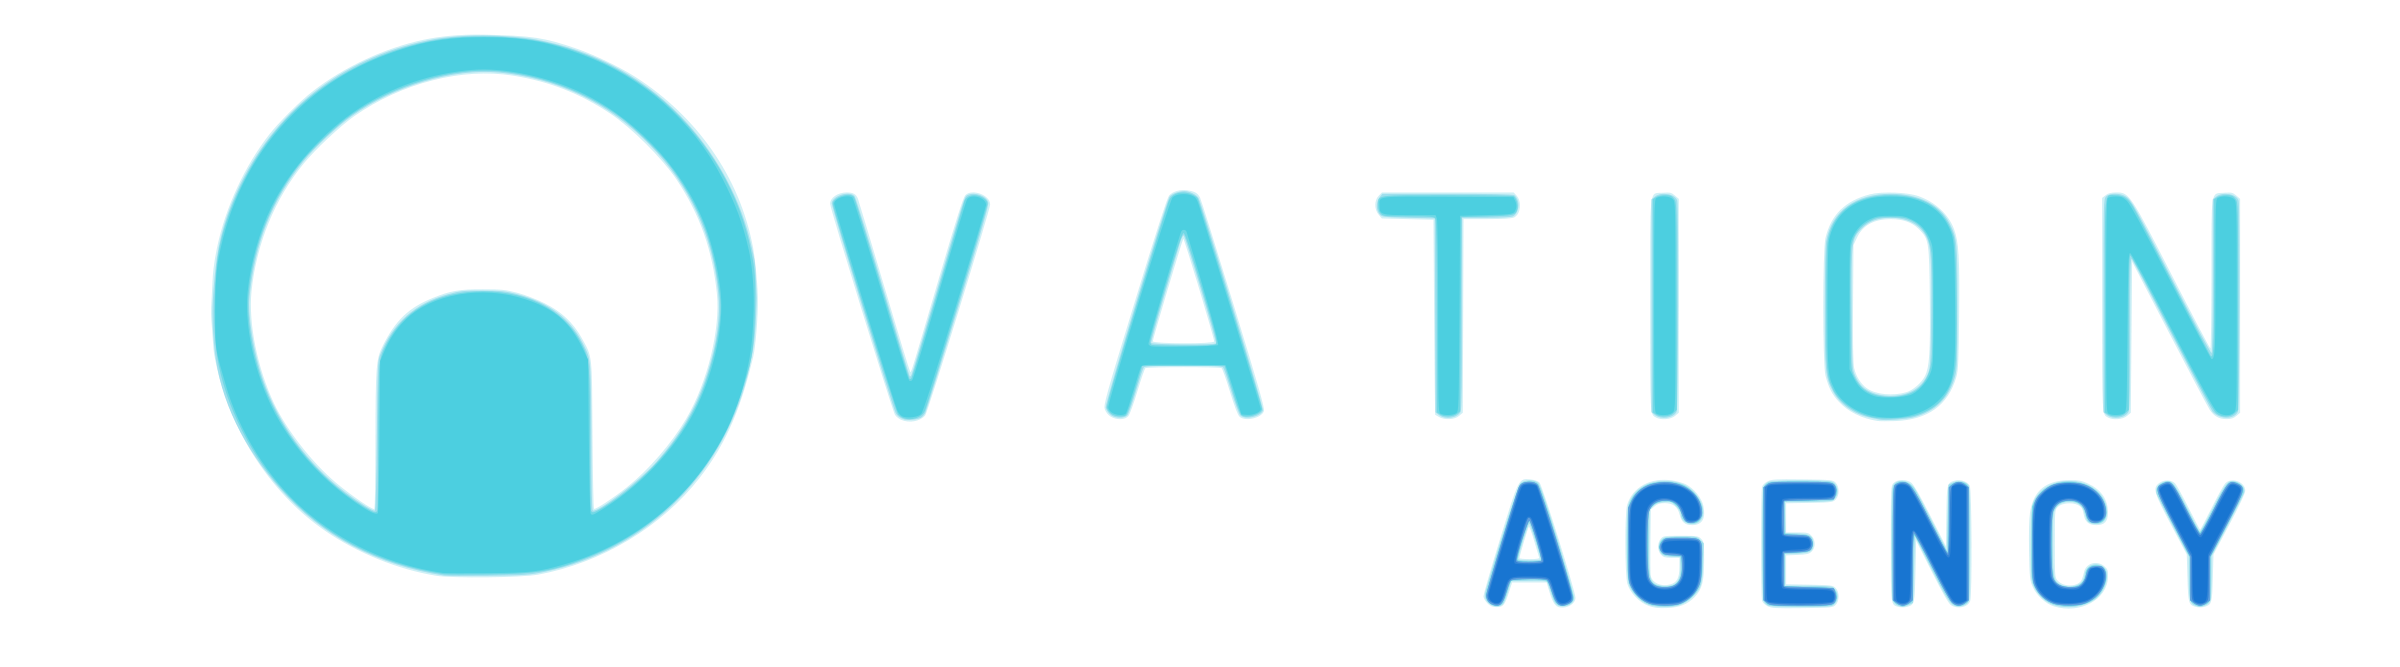 Ovation Agency Logo